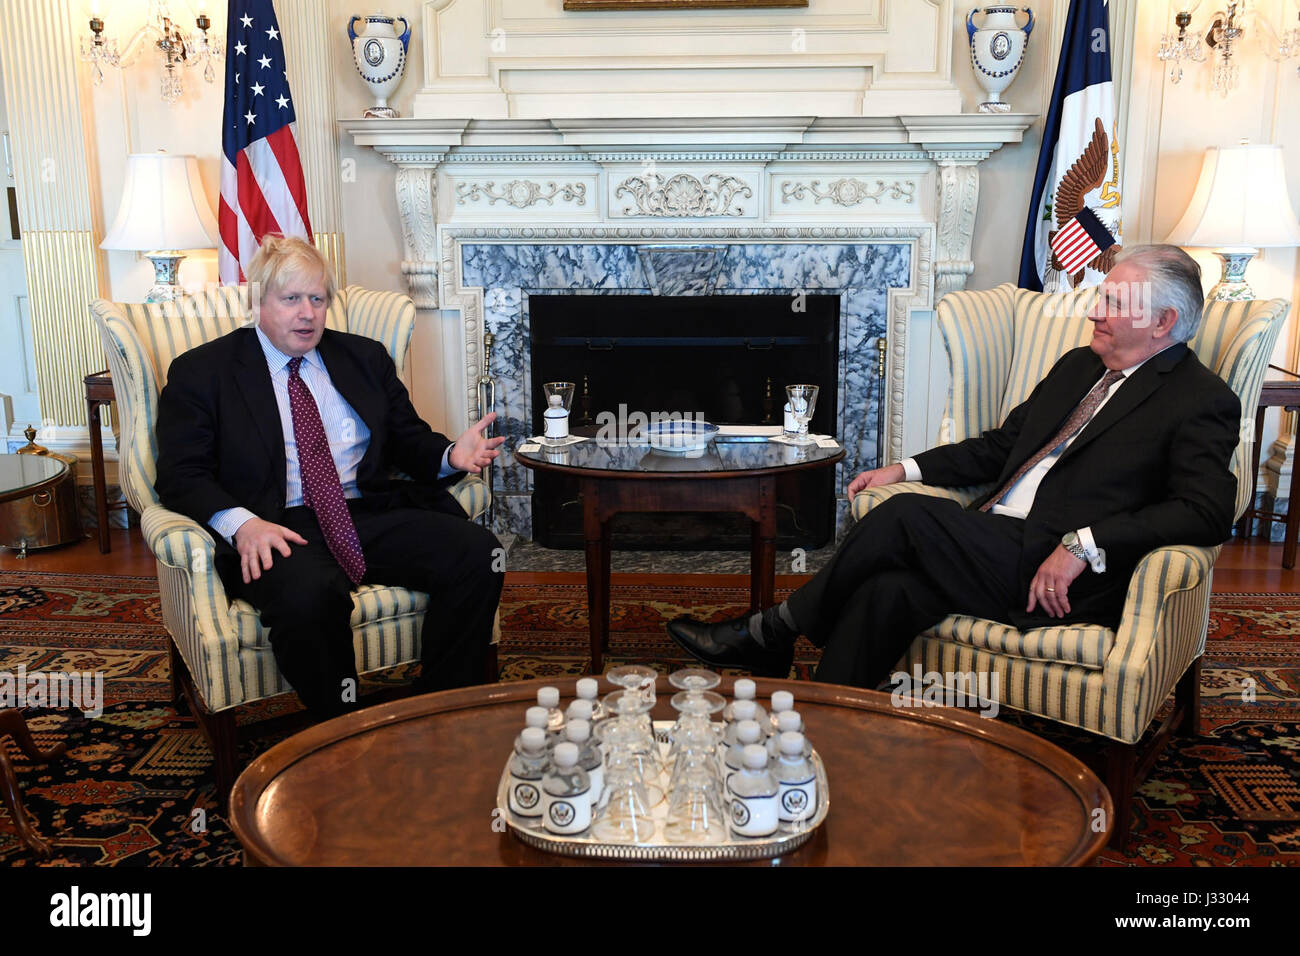 Stati Uniti Il segretario di Stato Rex Tillerson incontra il Segretario di Stato per gli stranieri &AMP; gli affari del Commonwealth del Regno Unito di Gran Bretagna e Irlanda del Nord Boris Johnson durante la riunione dei ministri della coalizione globale sulla sconfitta di Iside a U.S. Il Dipartimento di Stato a Washington D.C. il 22 marzo 2017. Foto Stock